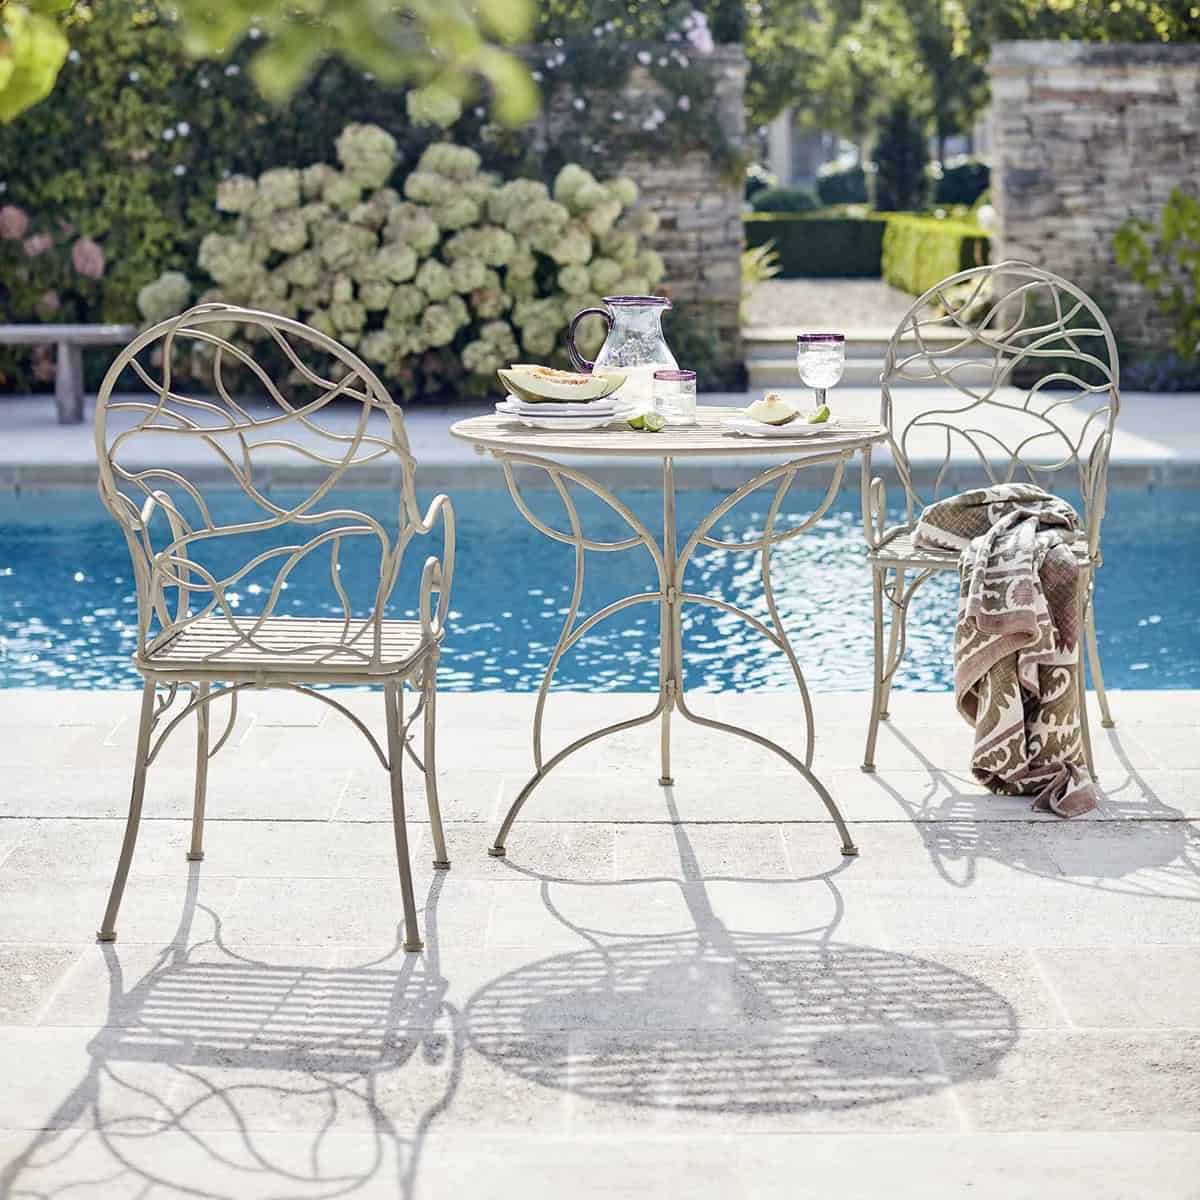  Metal garden chairs near swimming pool